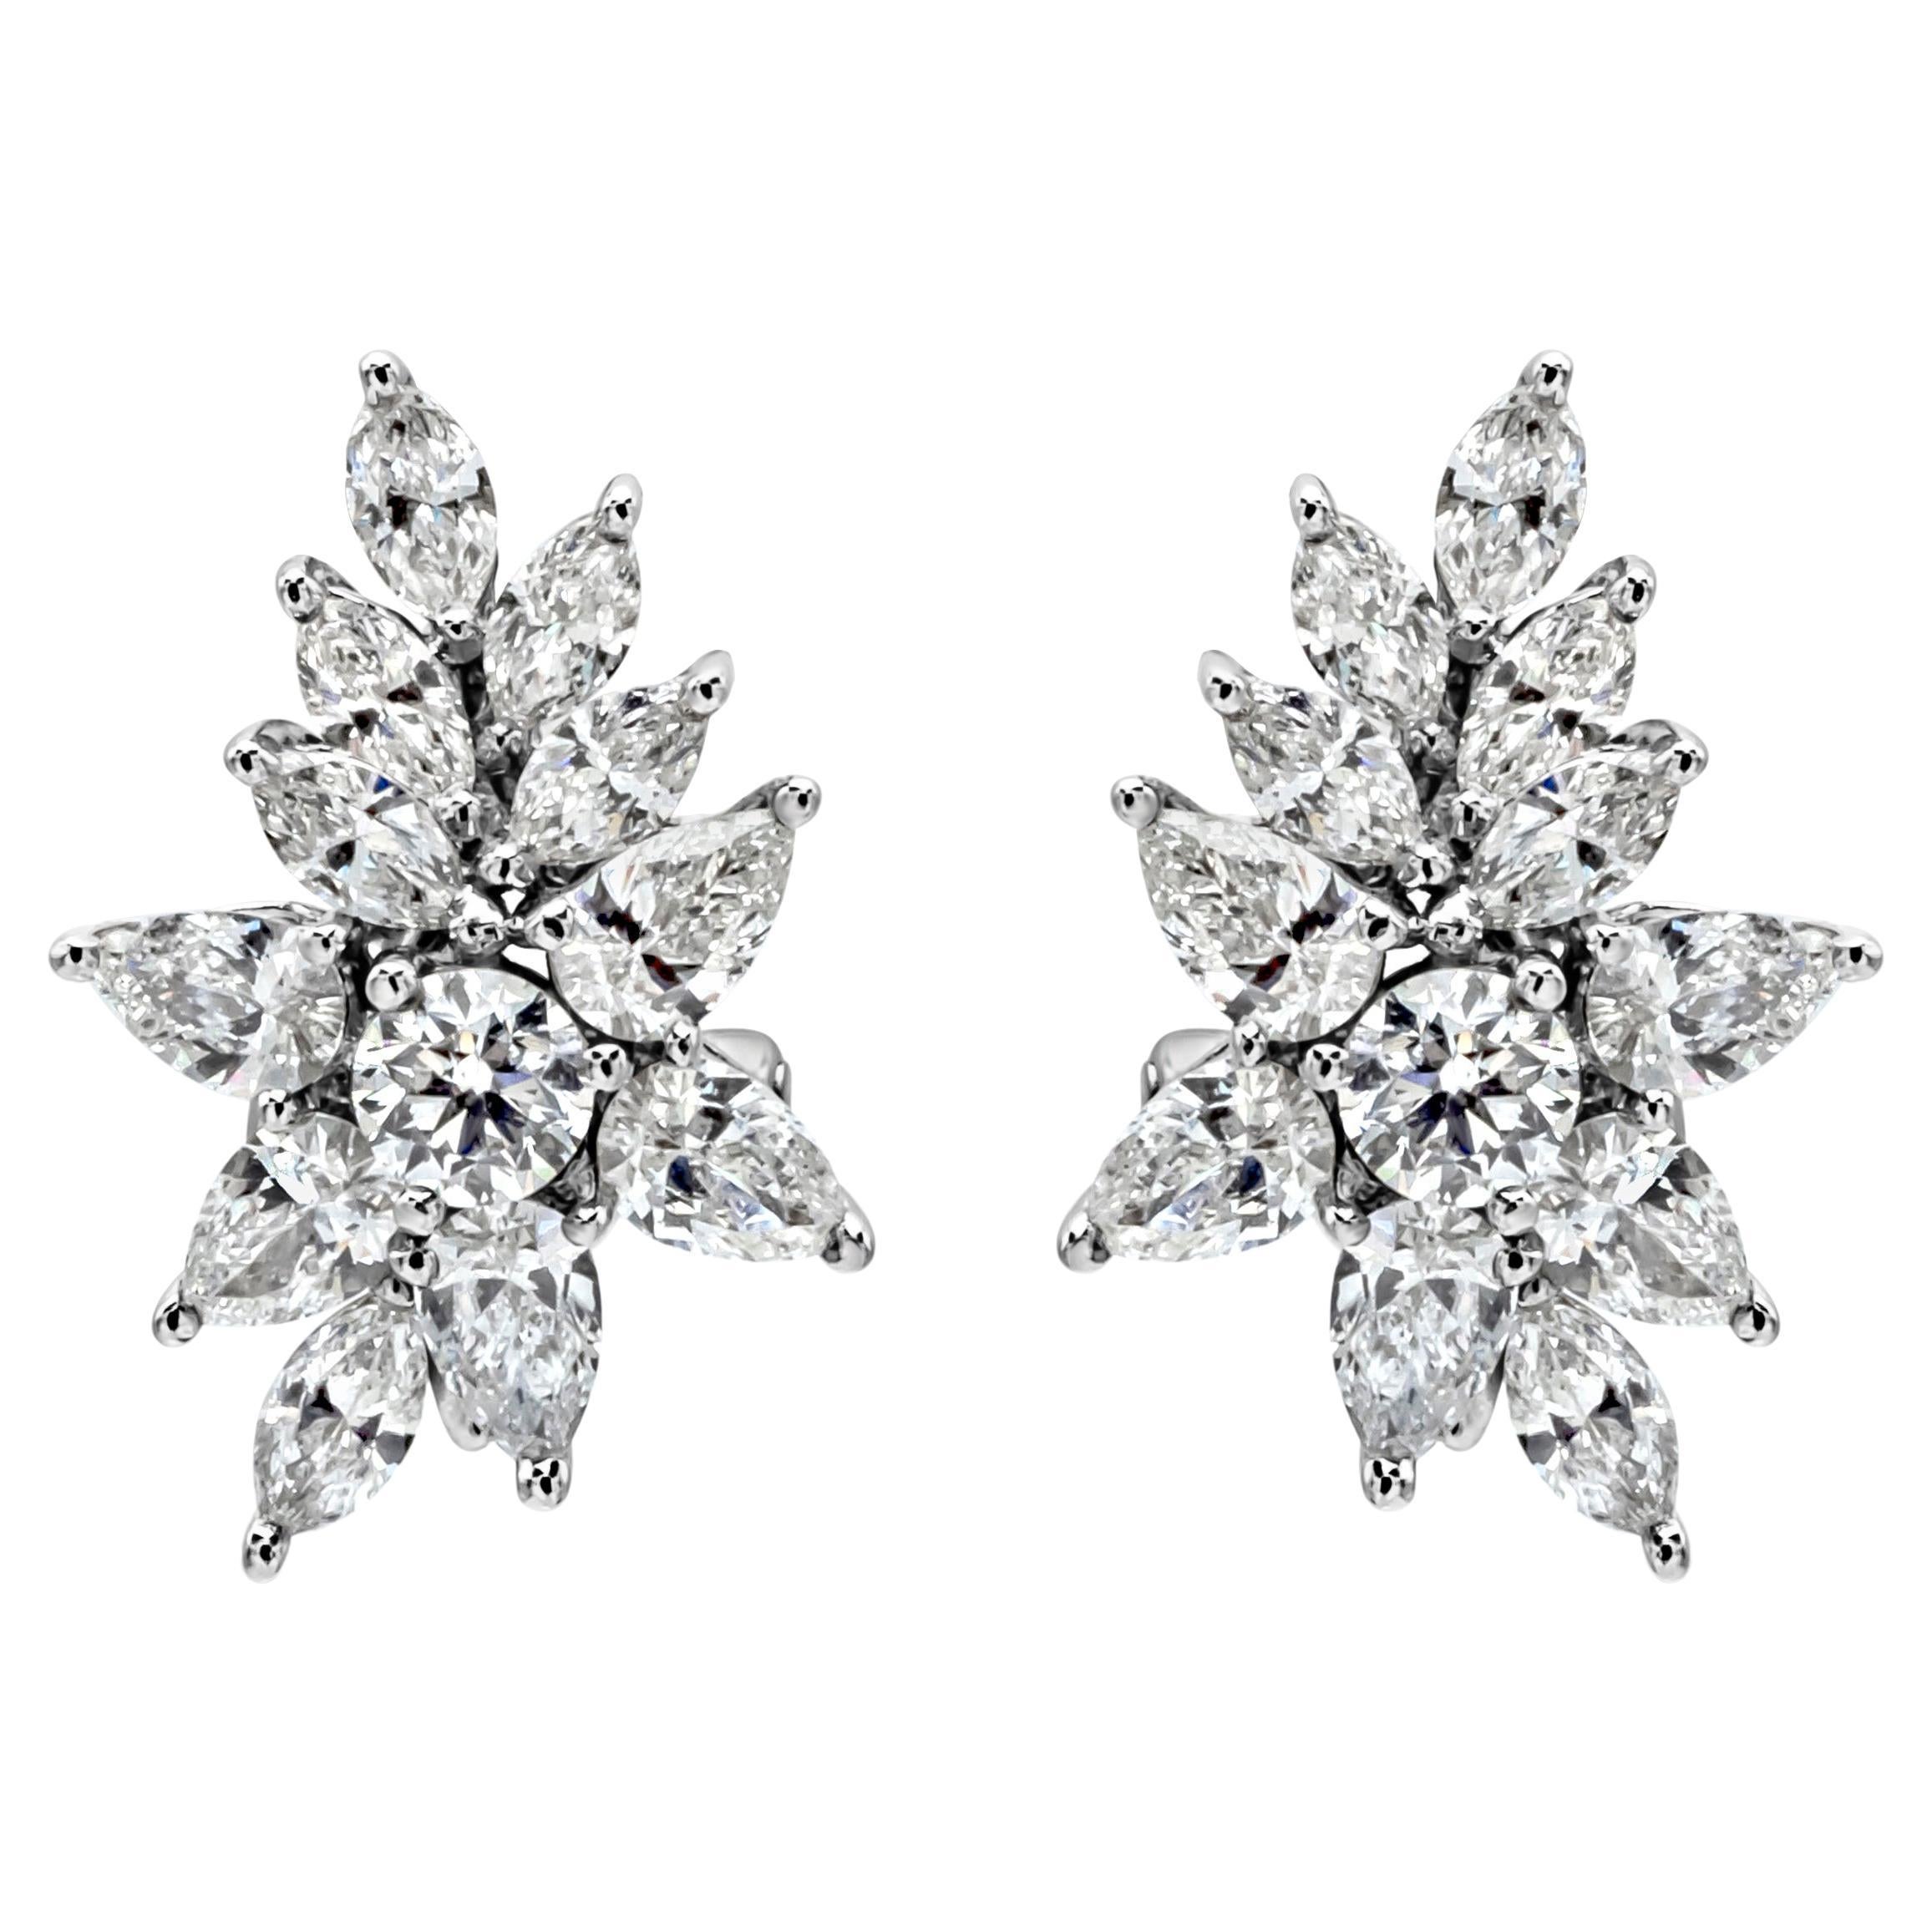 Roman Malakov 3.21 Carats Total Fancy Shape Diamonds Cluster Earrings For Sale